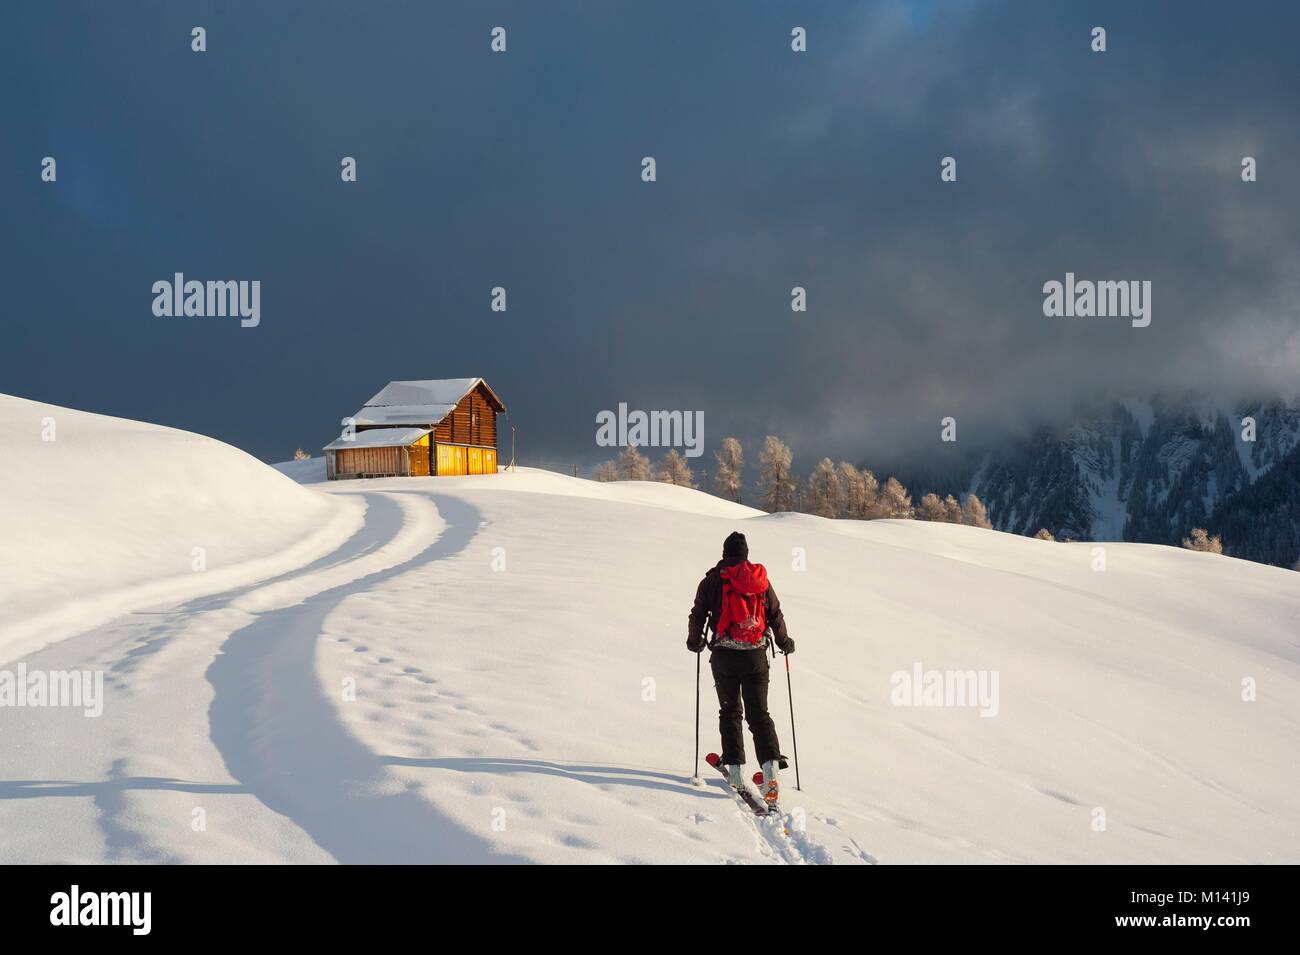 Switzerland, Graubünden, Safien valley, the village of Tenna, starting point of ski tours Stock Photo